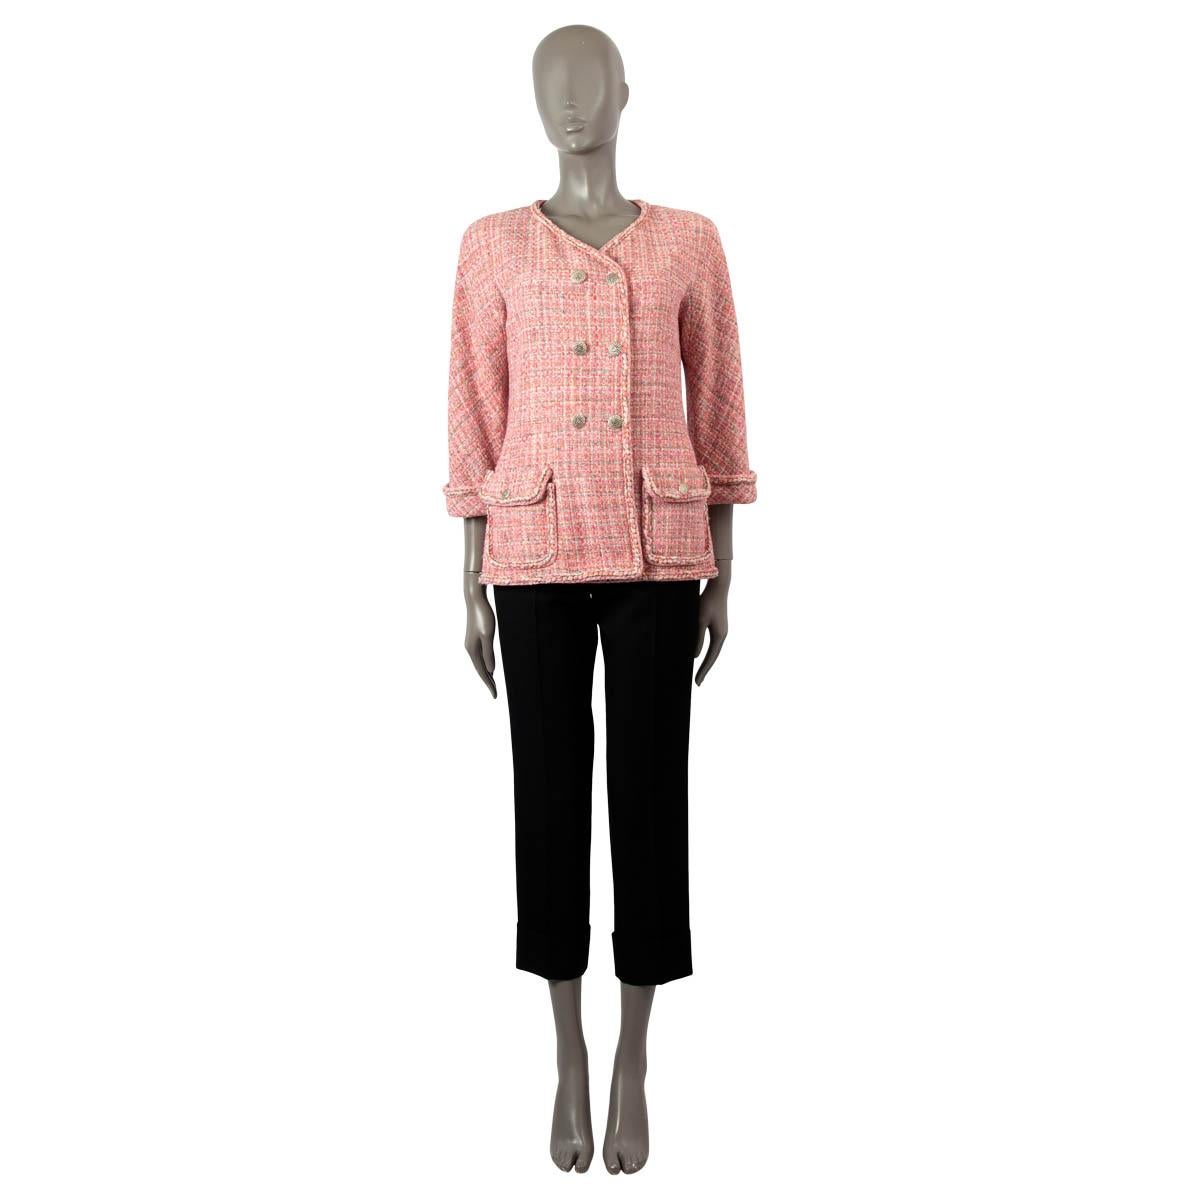 Veste en tweed à double boutonnage 100% authentique Chanel en nylon rose et multicolore (81%), polyuréthane (6%), acrylique (5%), rayonne (3%), coton (3%), mohair (1%) et laine (1%). Il présente des bordures tressées, des manches 3/4 et des poches à